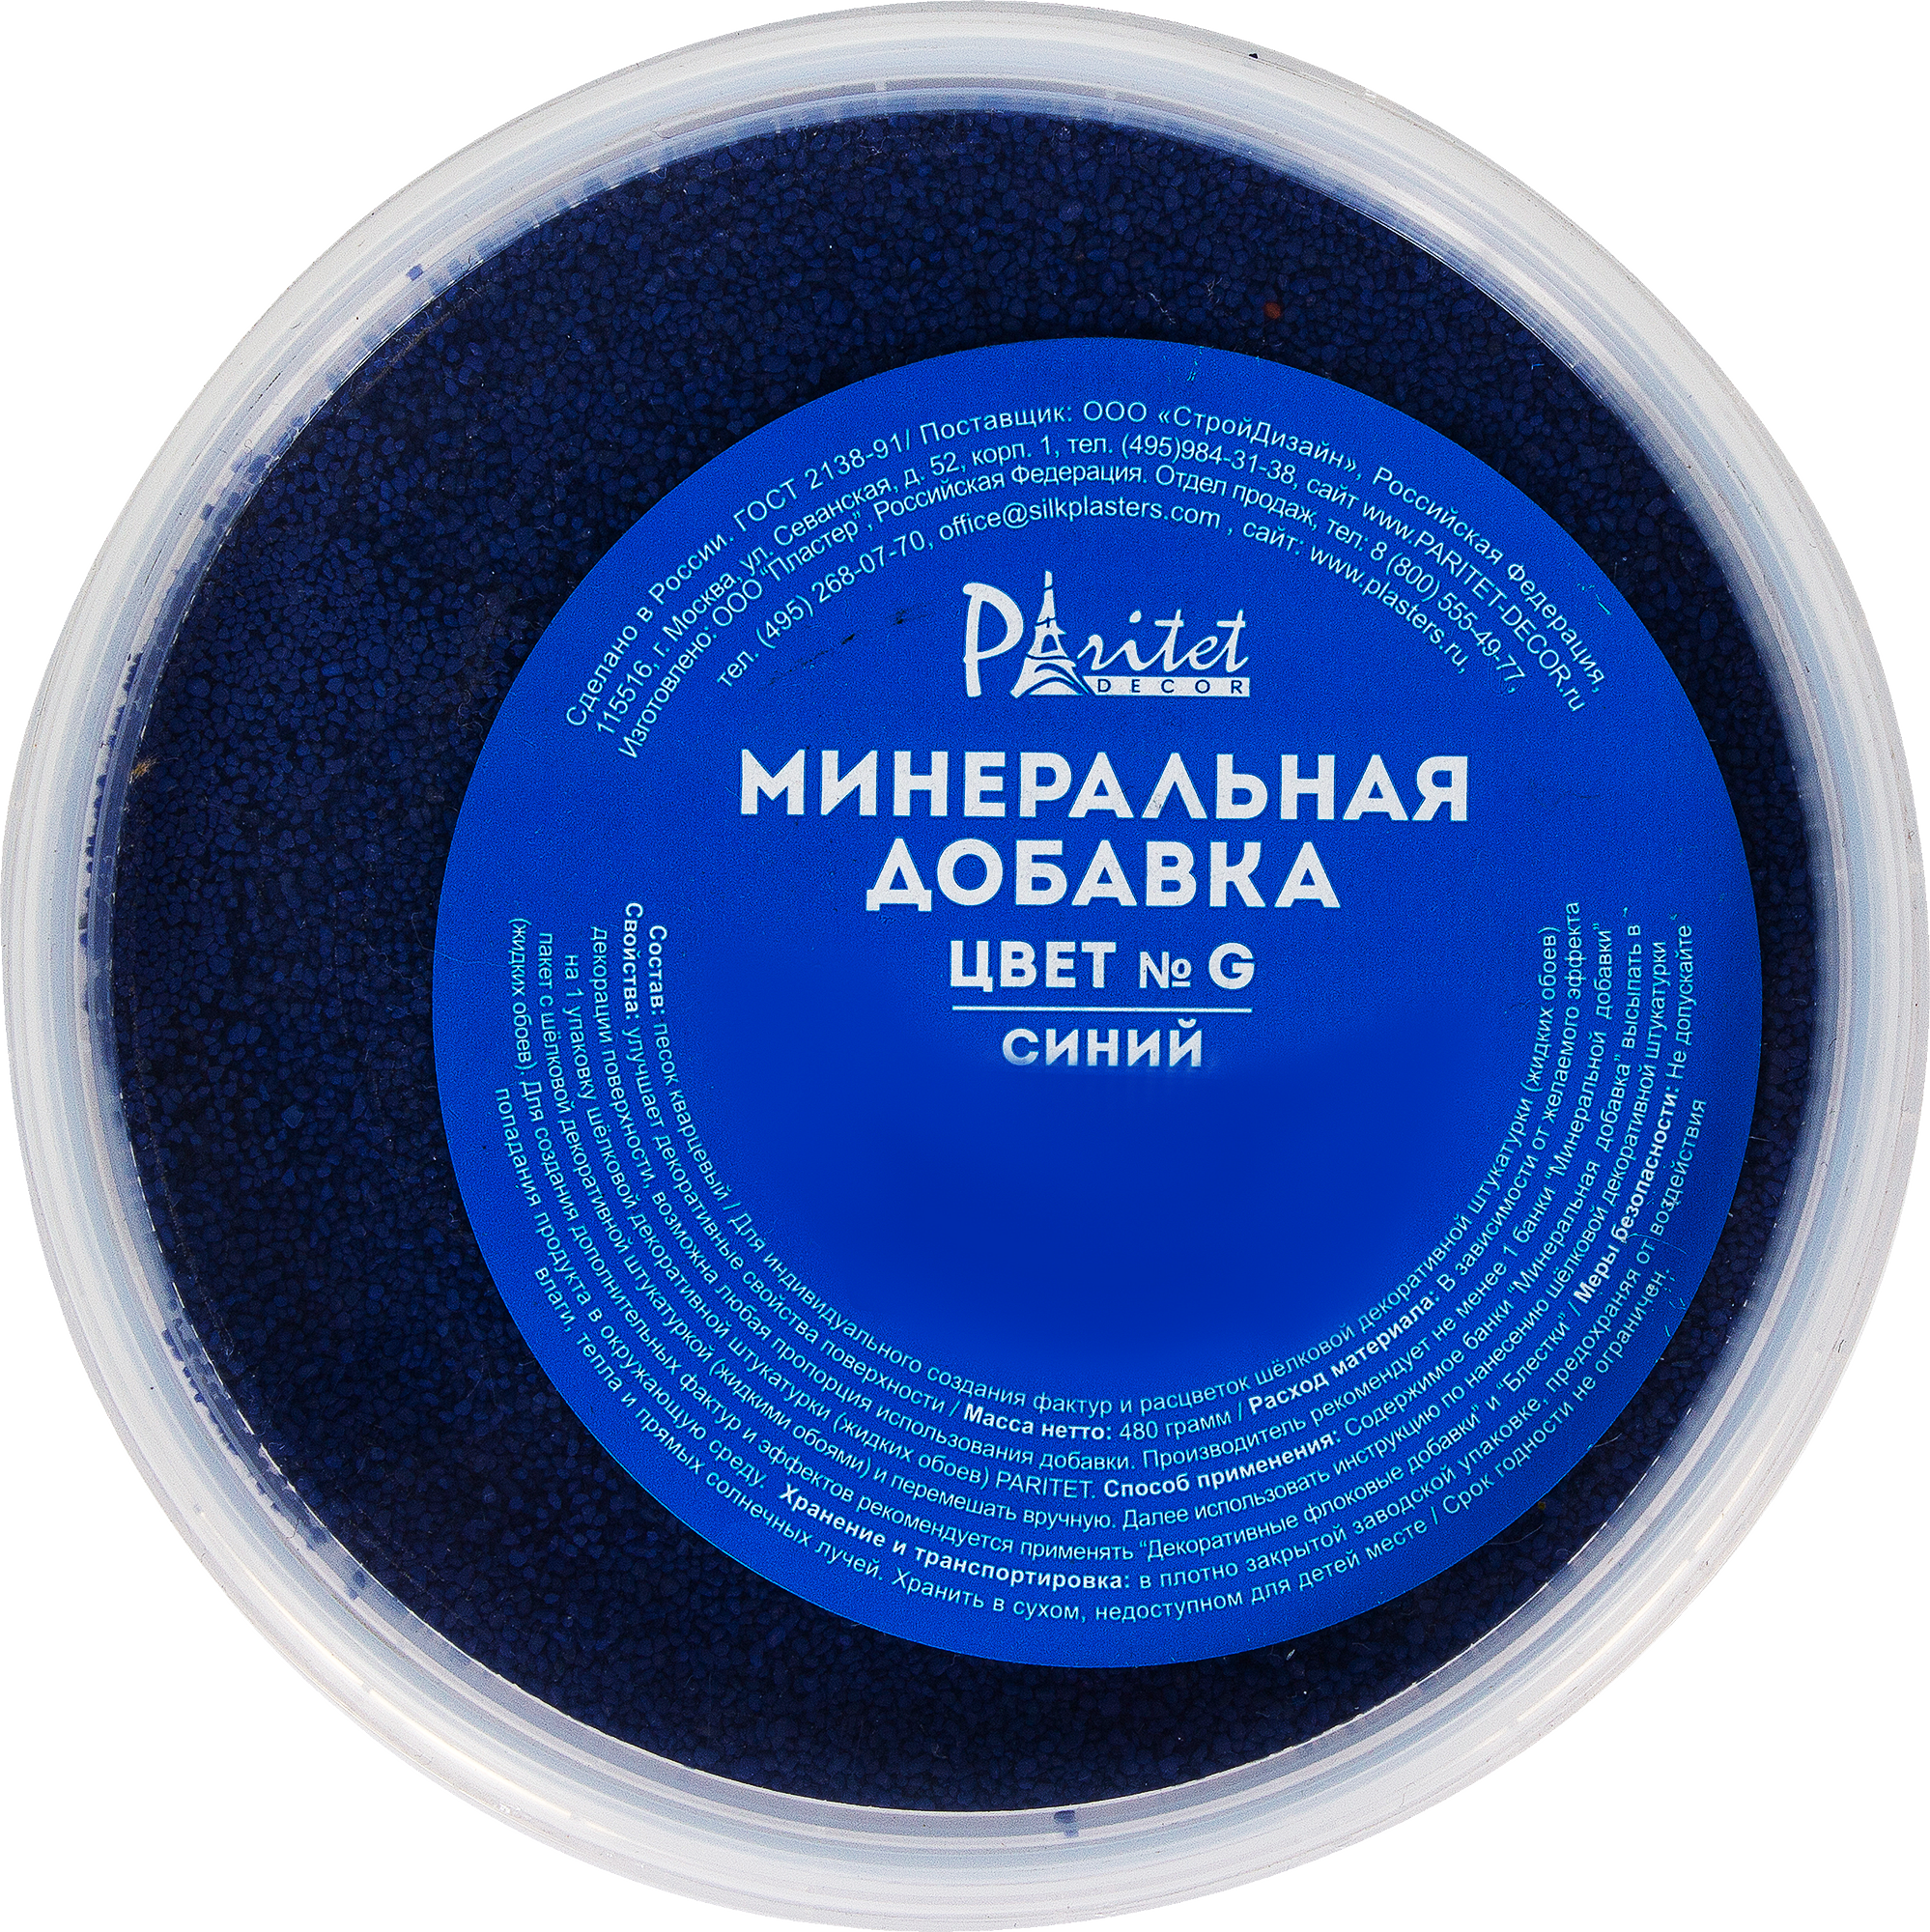 Минеральная добавка № G цвет синий по цене 188 ₽/шт. купить в Волгограде в  интернет-магазине Леруа Мерлен